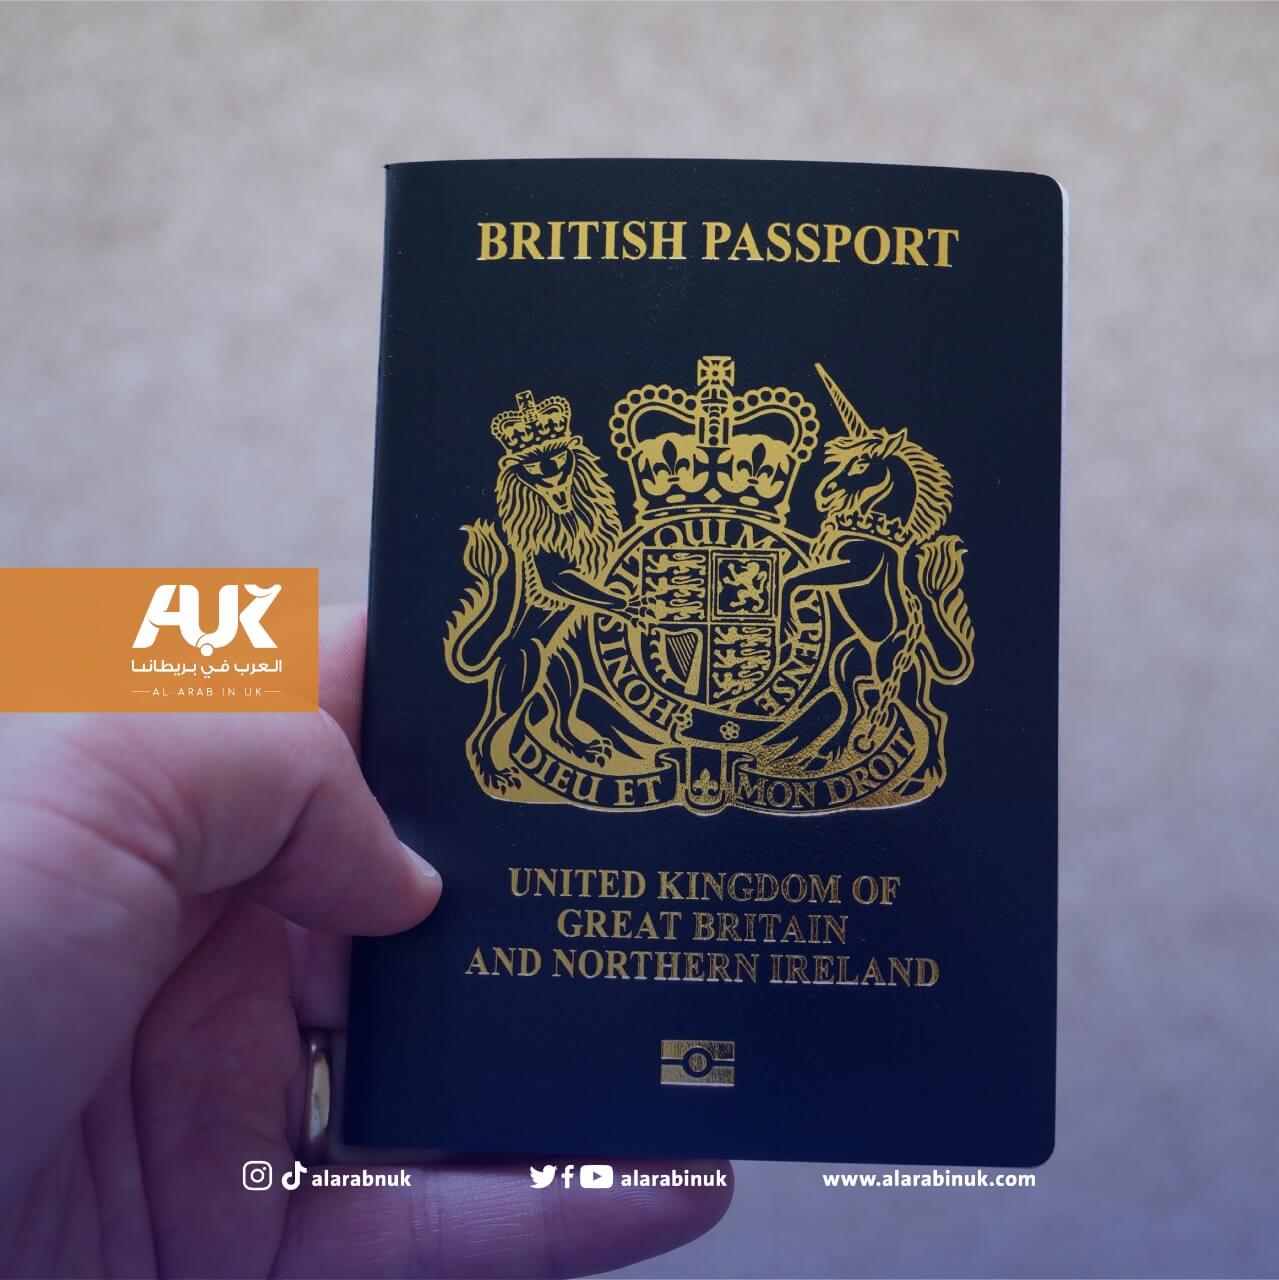 الداخلية البريطانية تنصح باستخراج وتجديد الجواز قبل 10 أسابيع من موعد السفر (AUK)